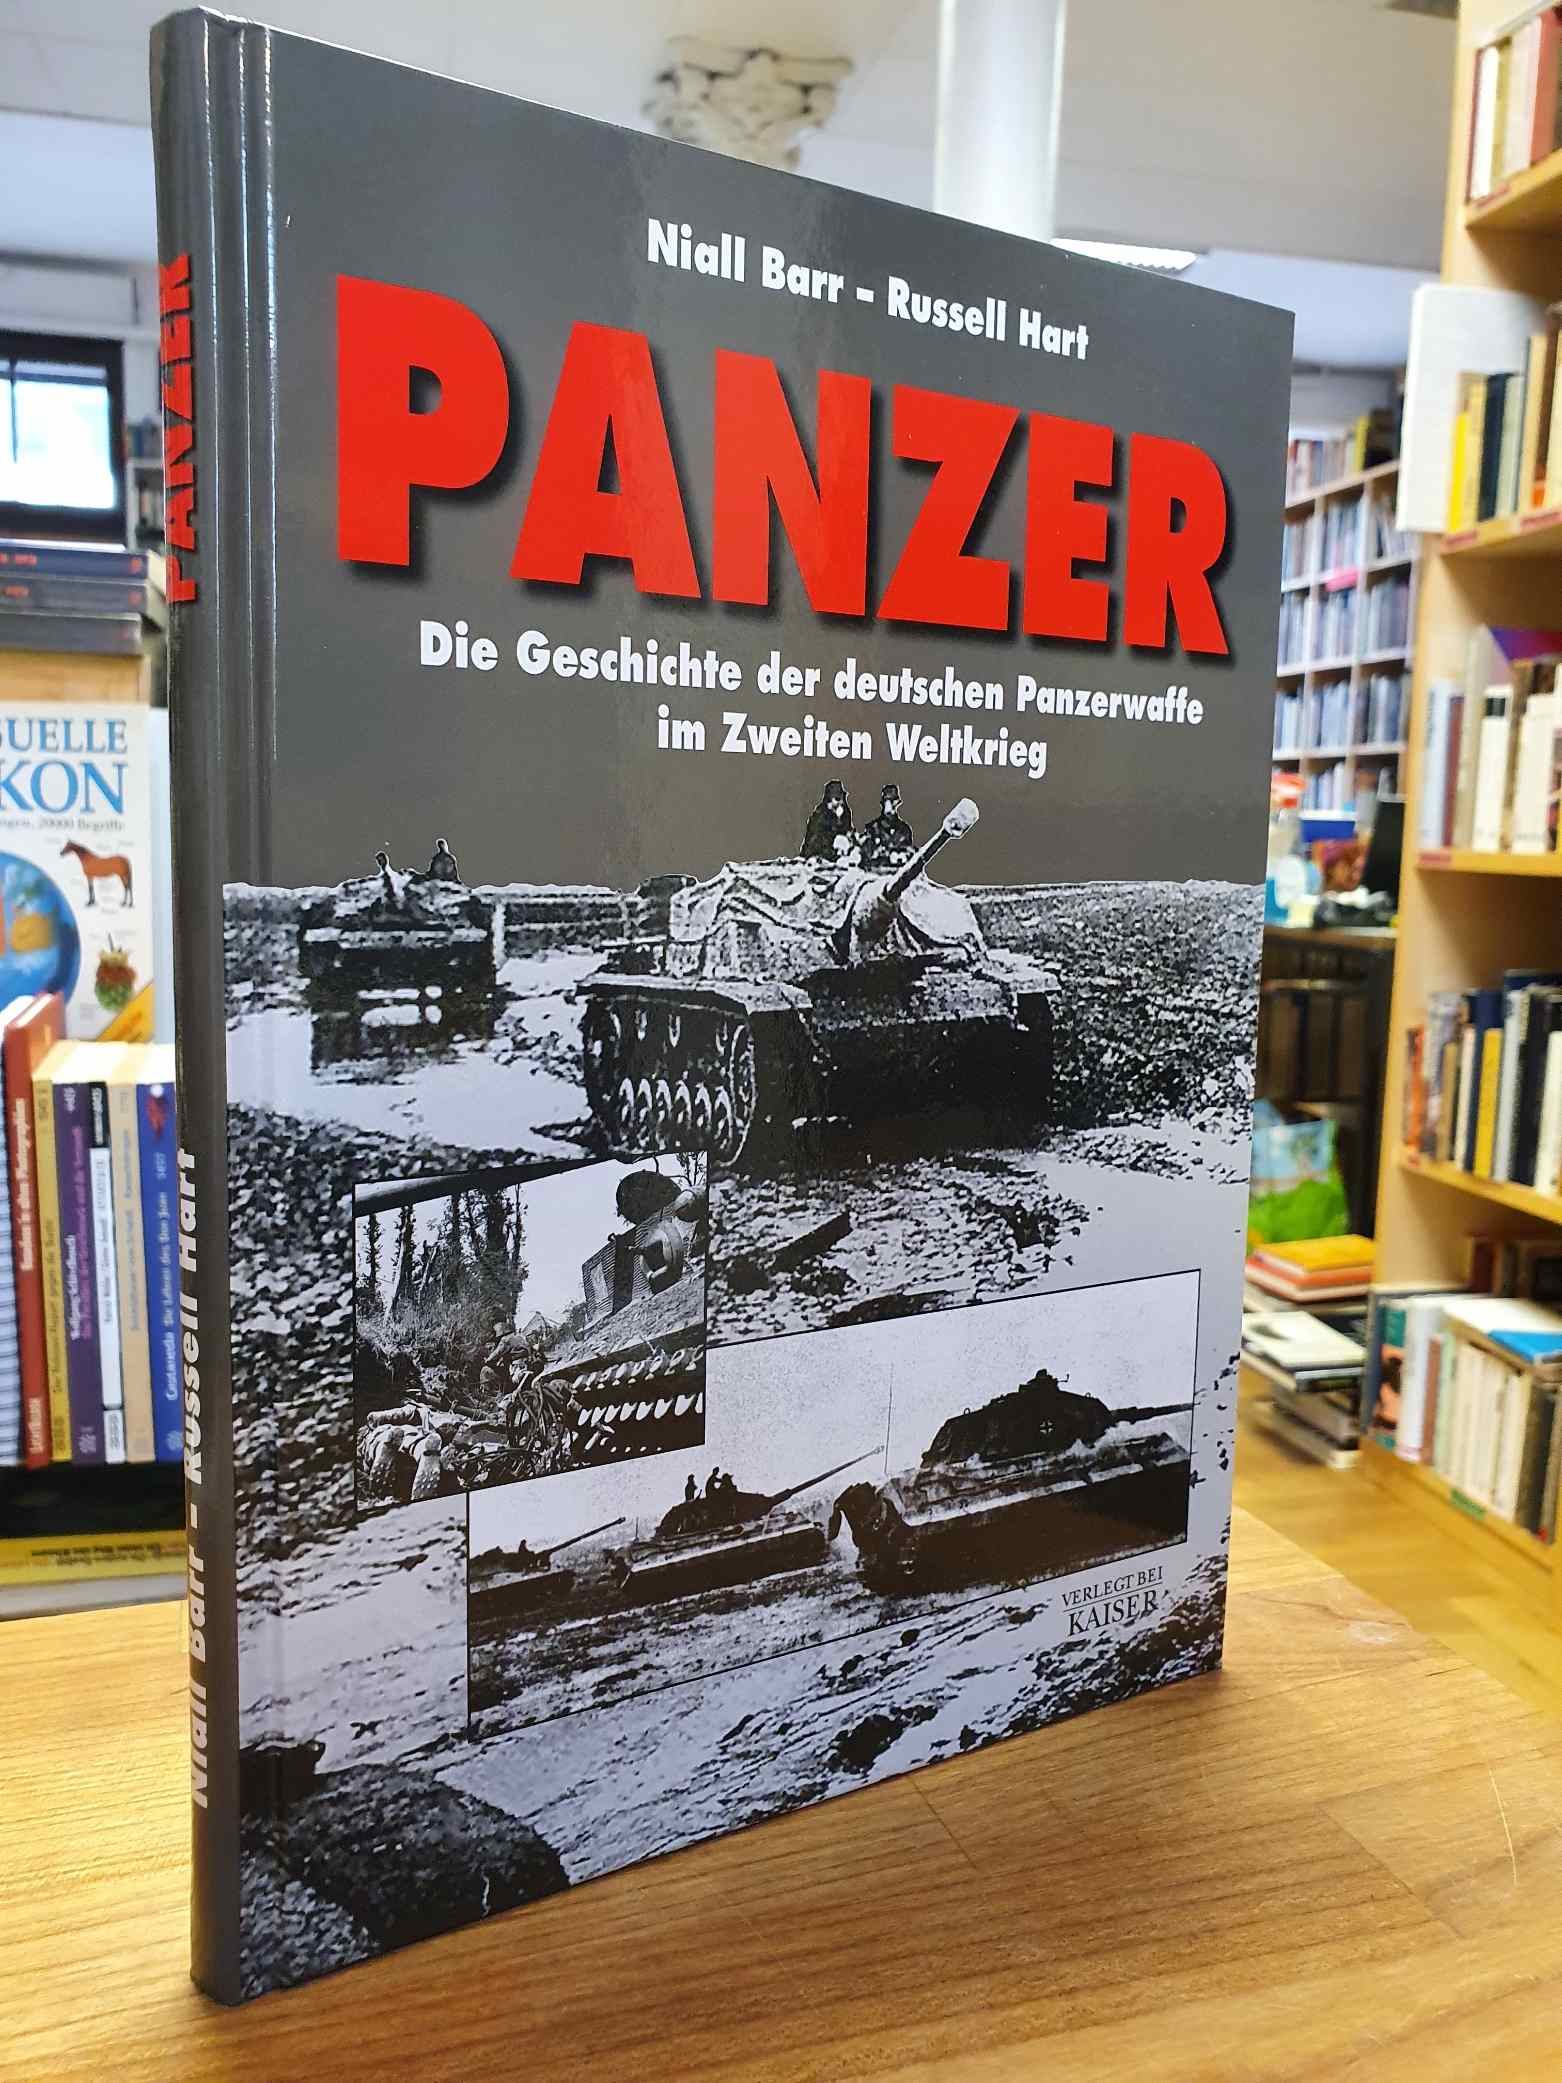 Barr, Panzer – Die Geschichte der deutschen Panzerwaffe im Zweiten Weltkrieg,